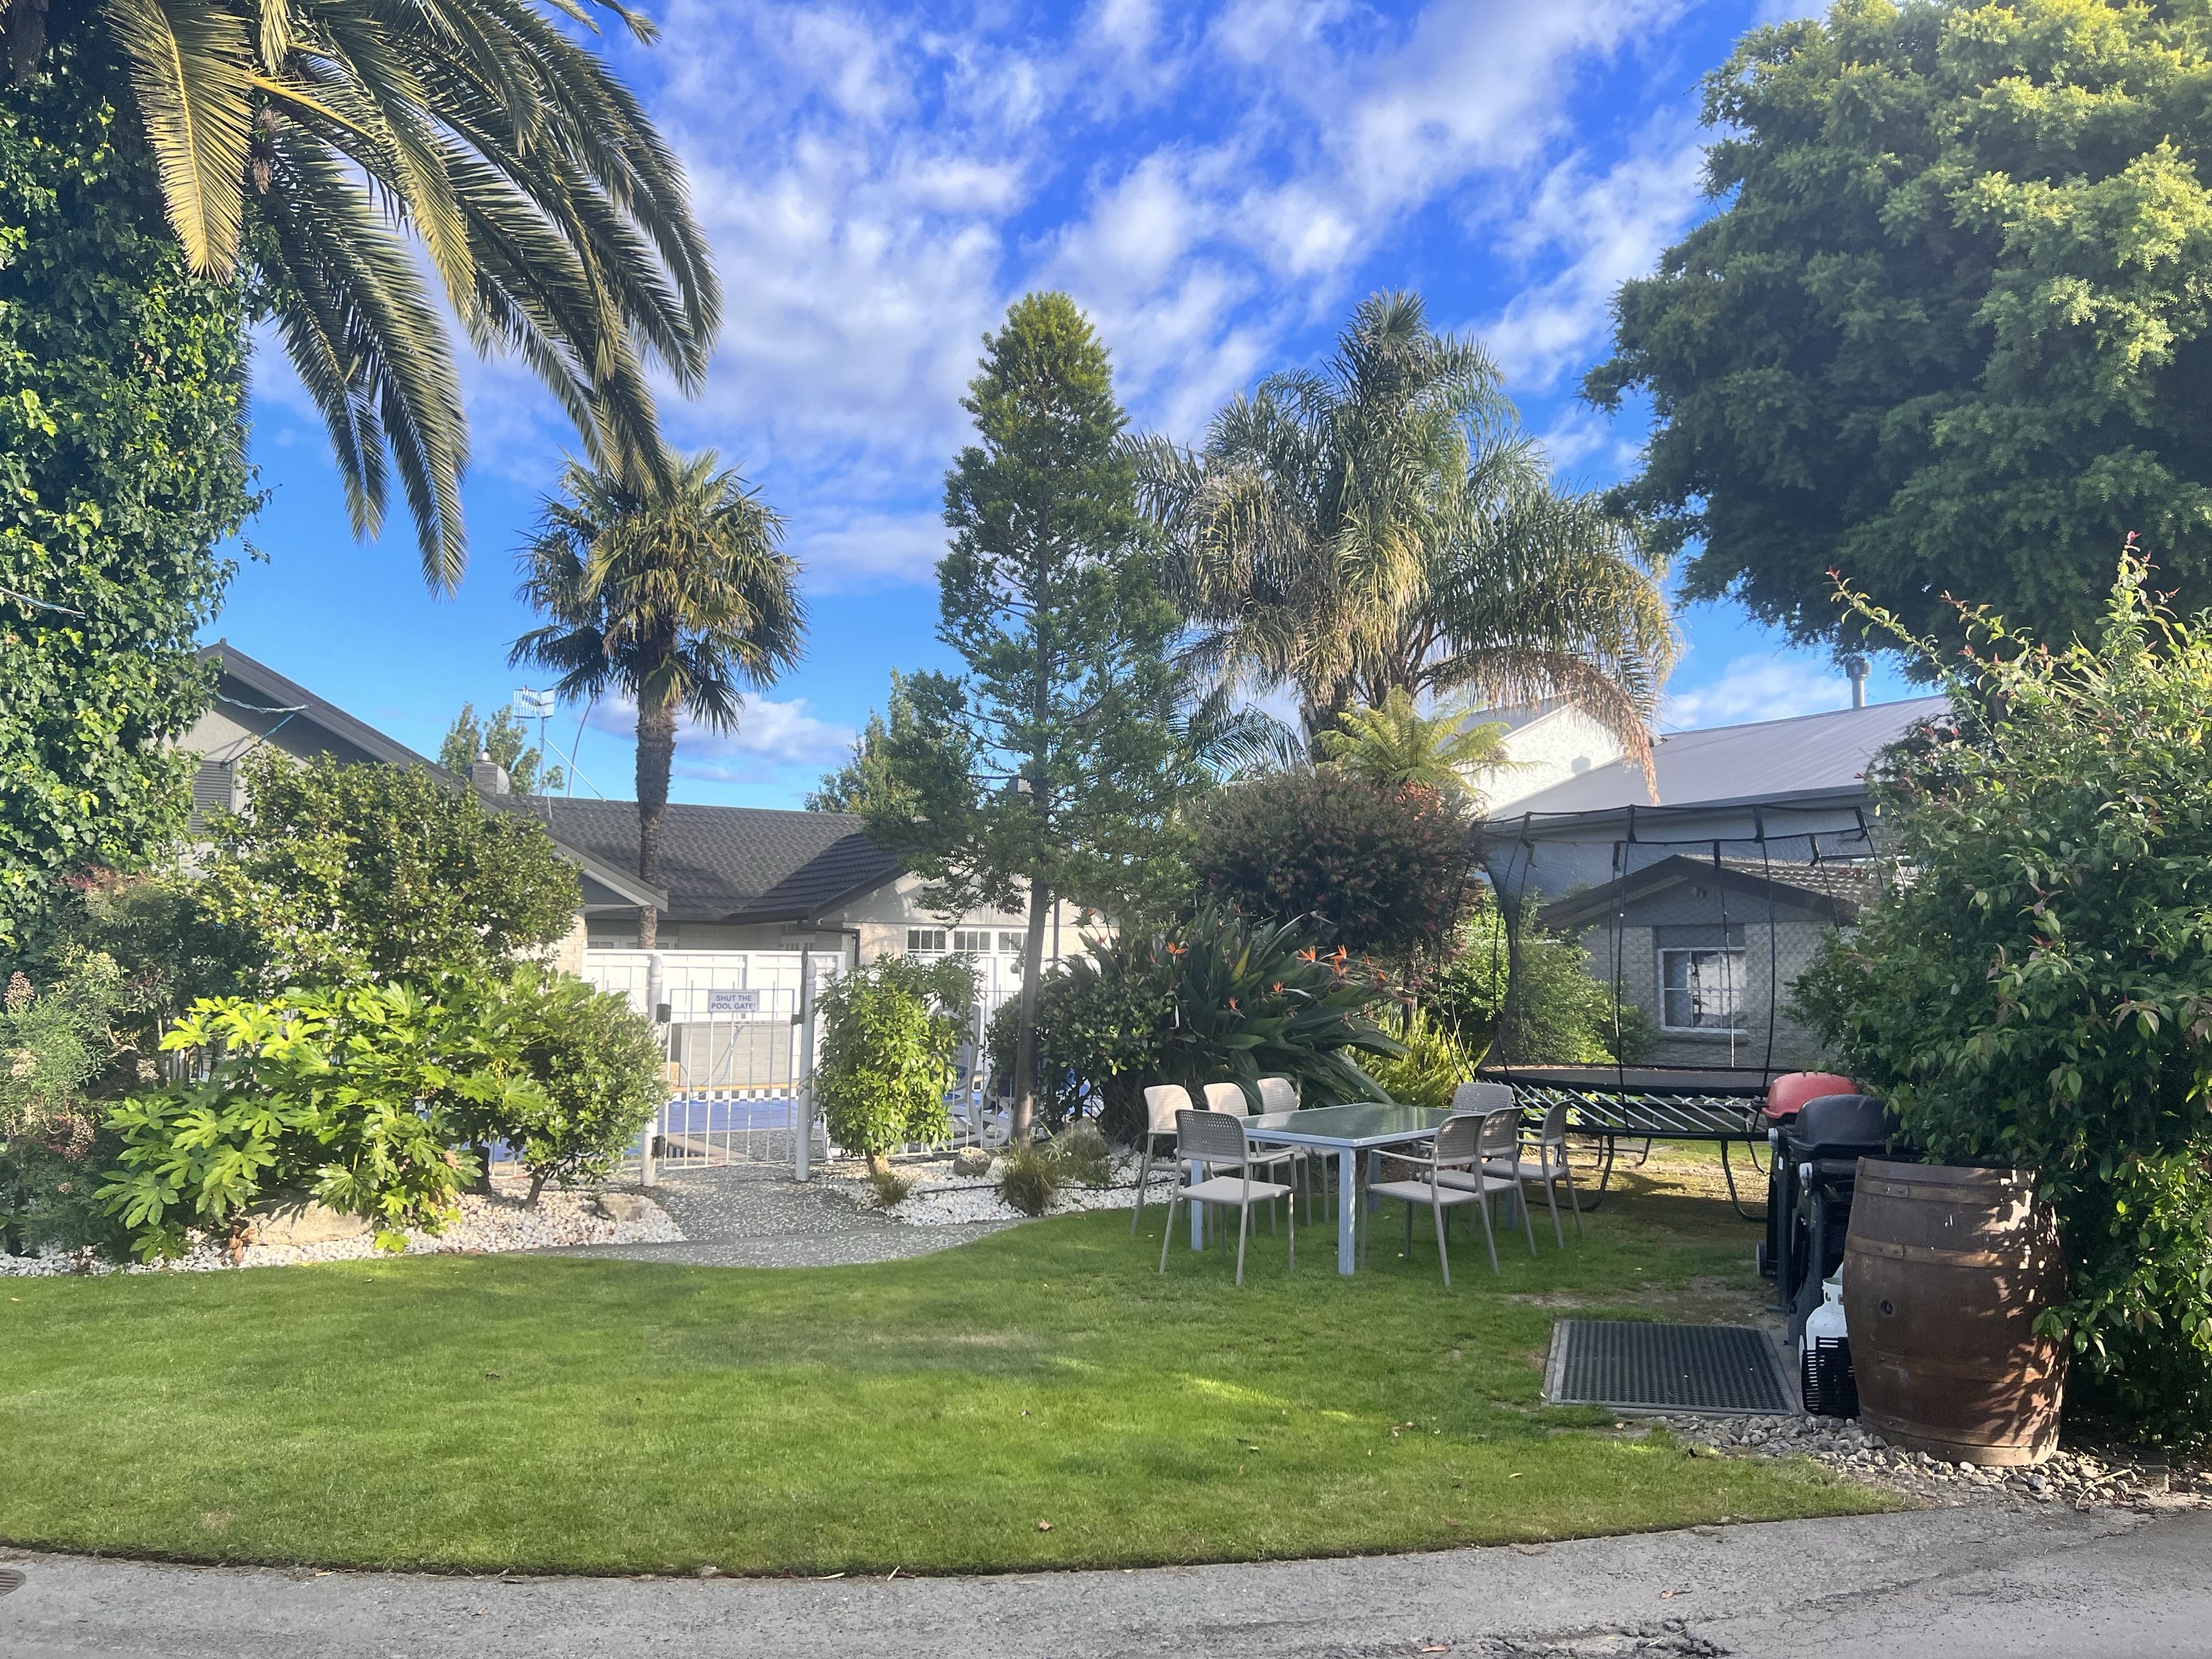 在新西兰20天住的最好的酒店，所有的细节都很好，酒店虽不大，但庭院精致很美，有烧烤区，儿童玩的区域。